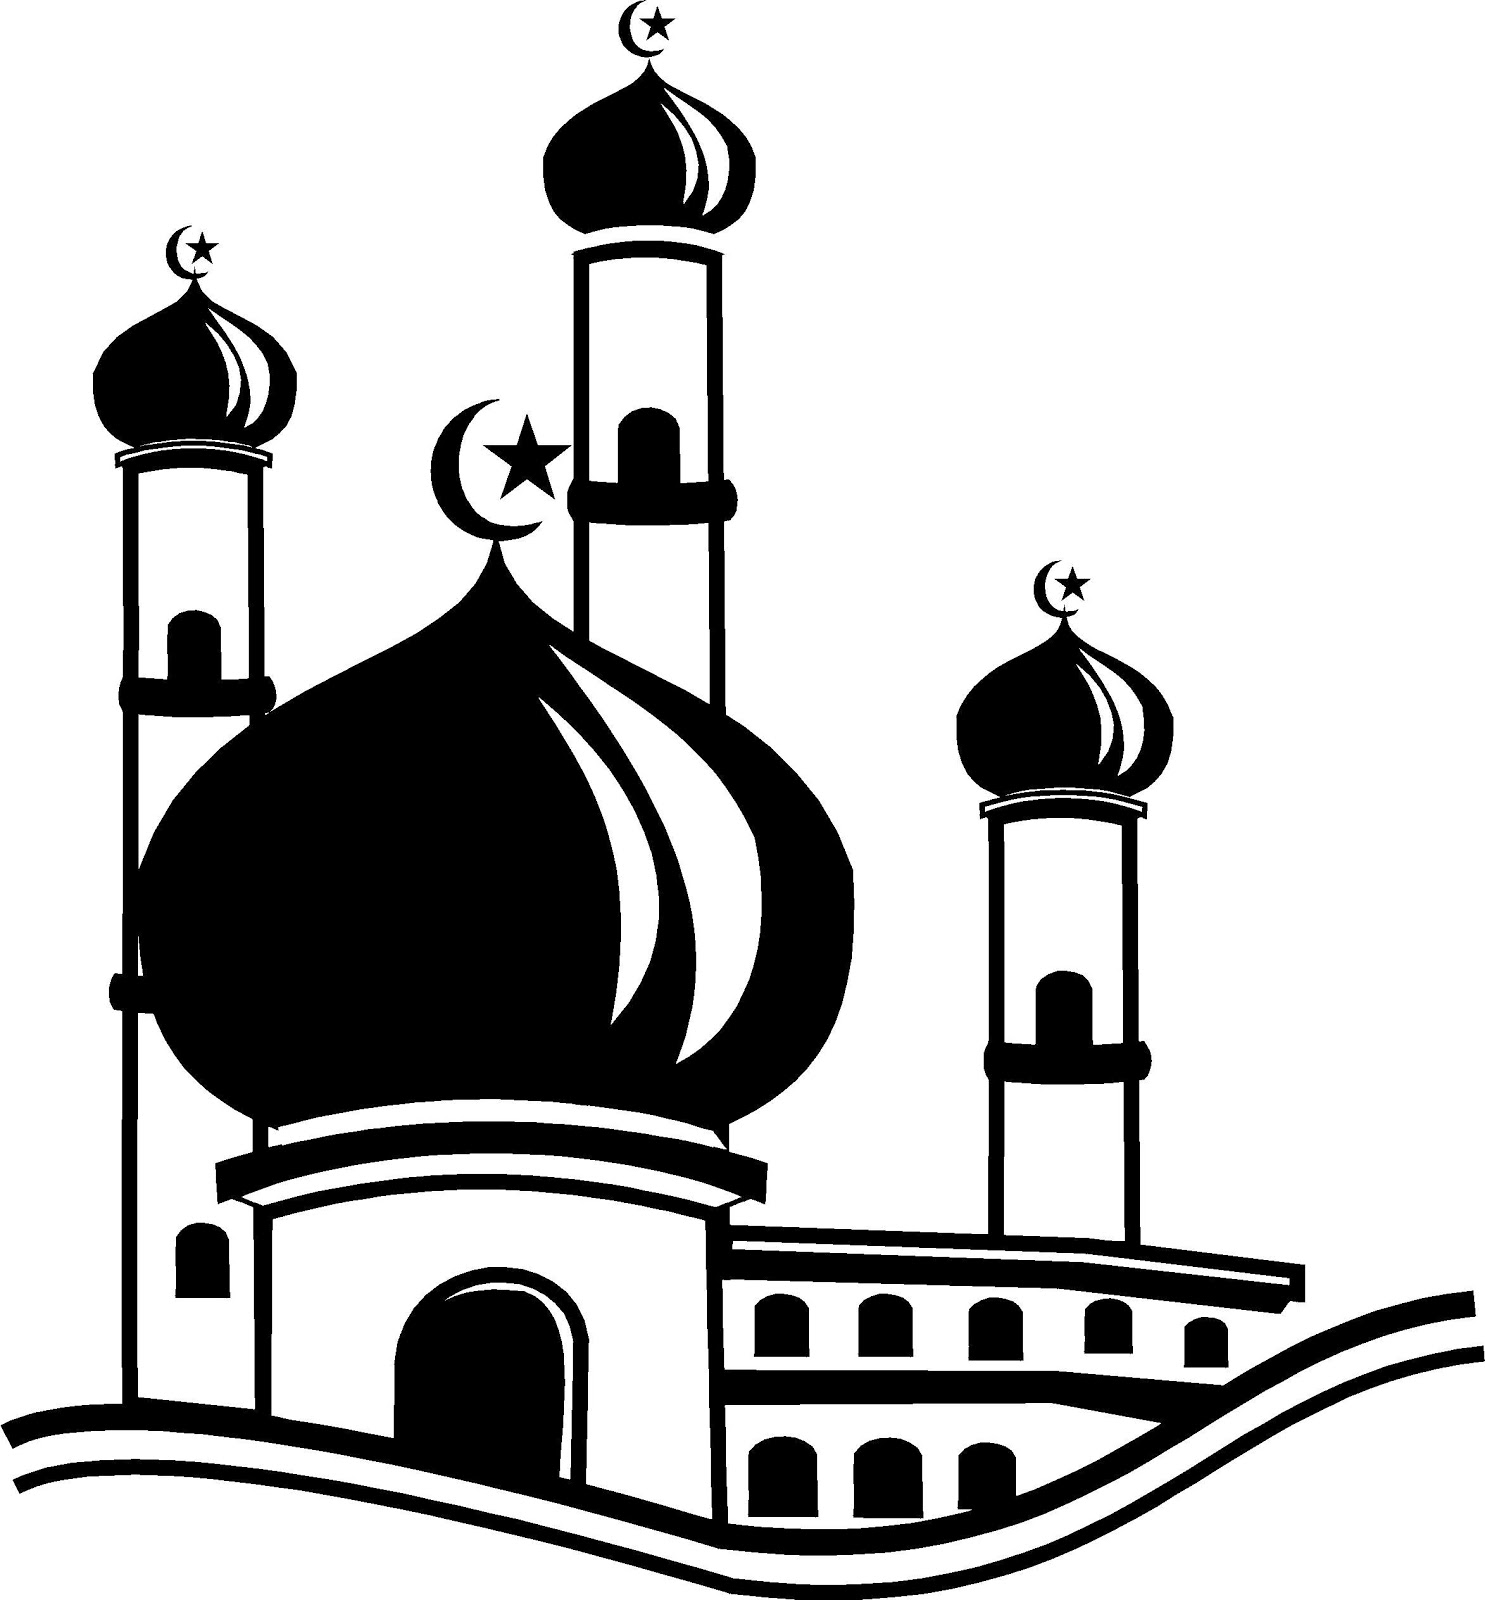 Contoh Gambar Karikatur Masjid Ideku Unik